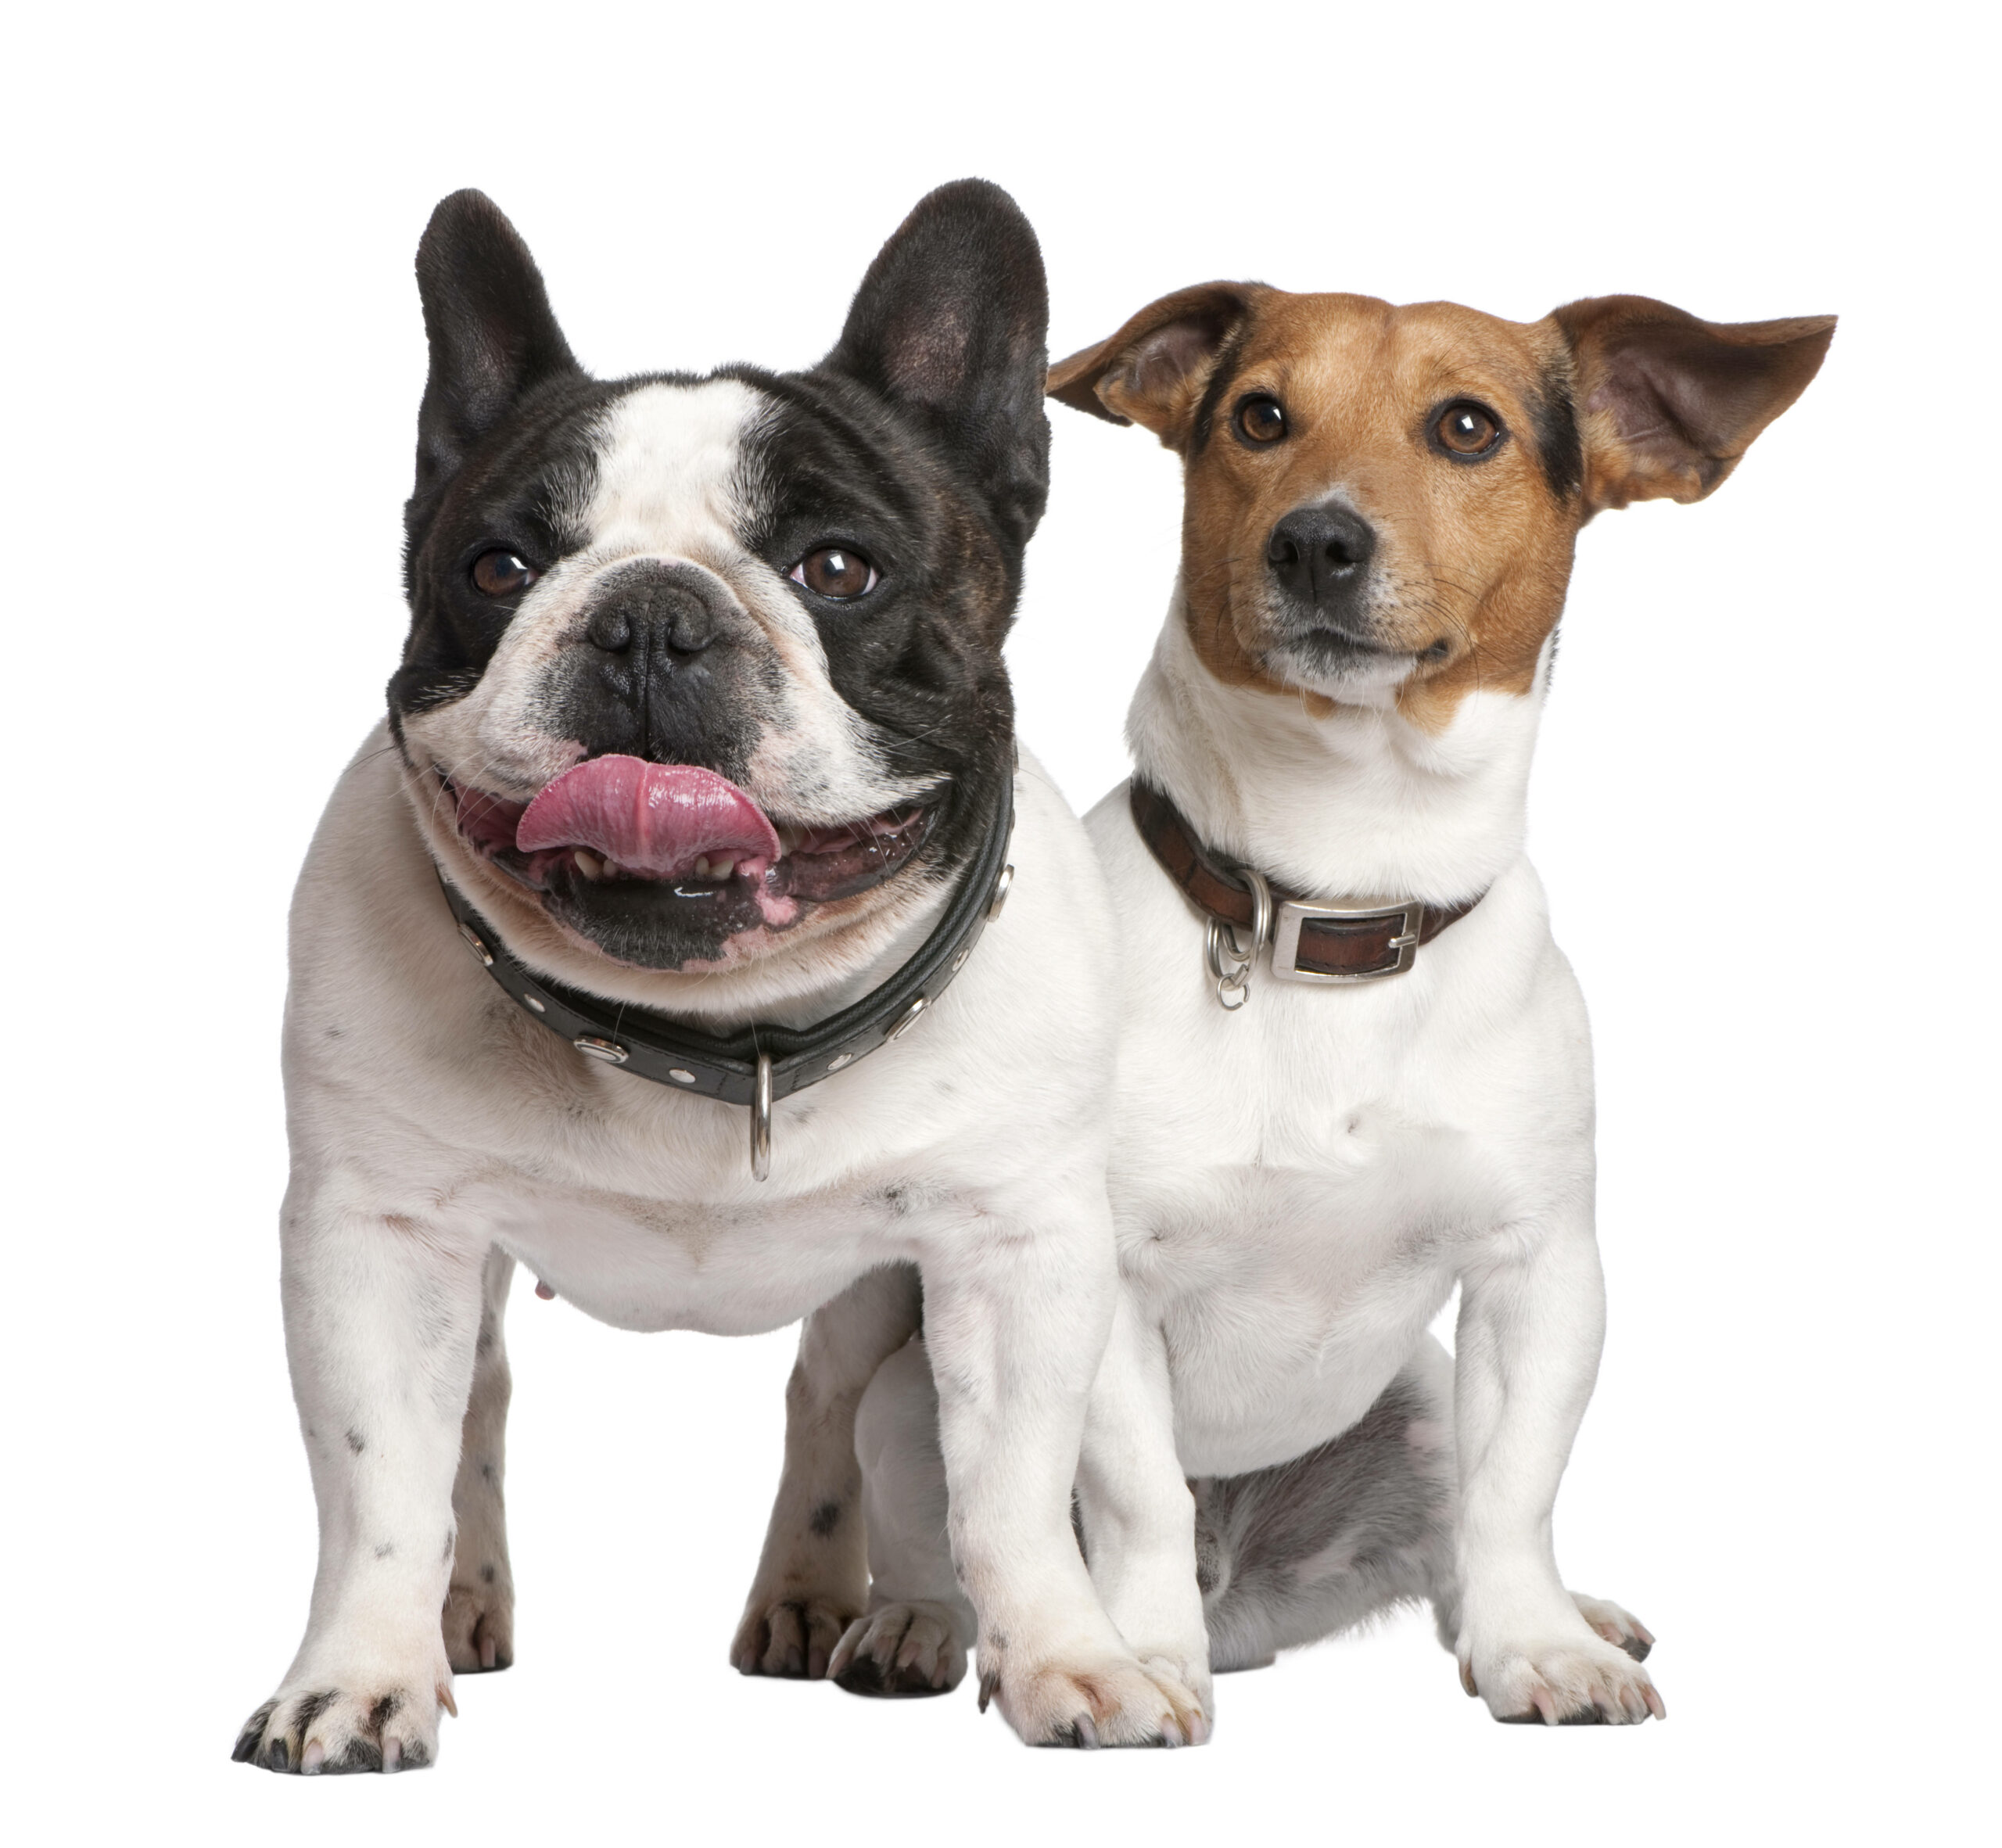 Wer, ich? Jack Russell Terrier (r.) gehören zu den langlebigsten Hunderassen – französische Bulldoggen eher nicht.